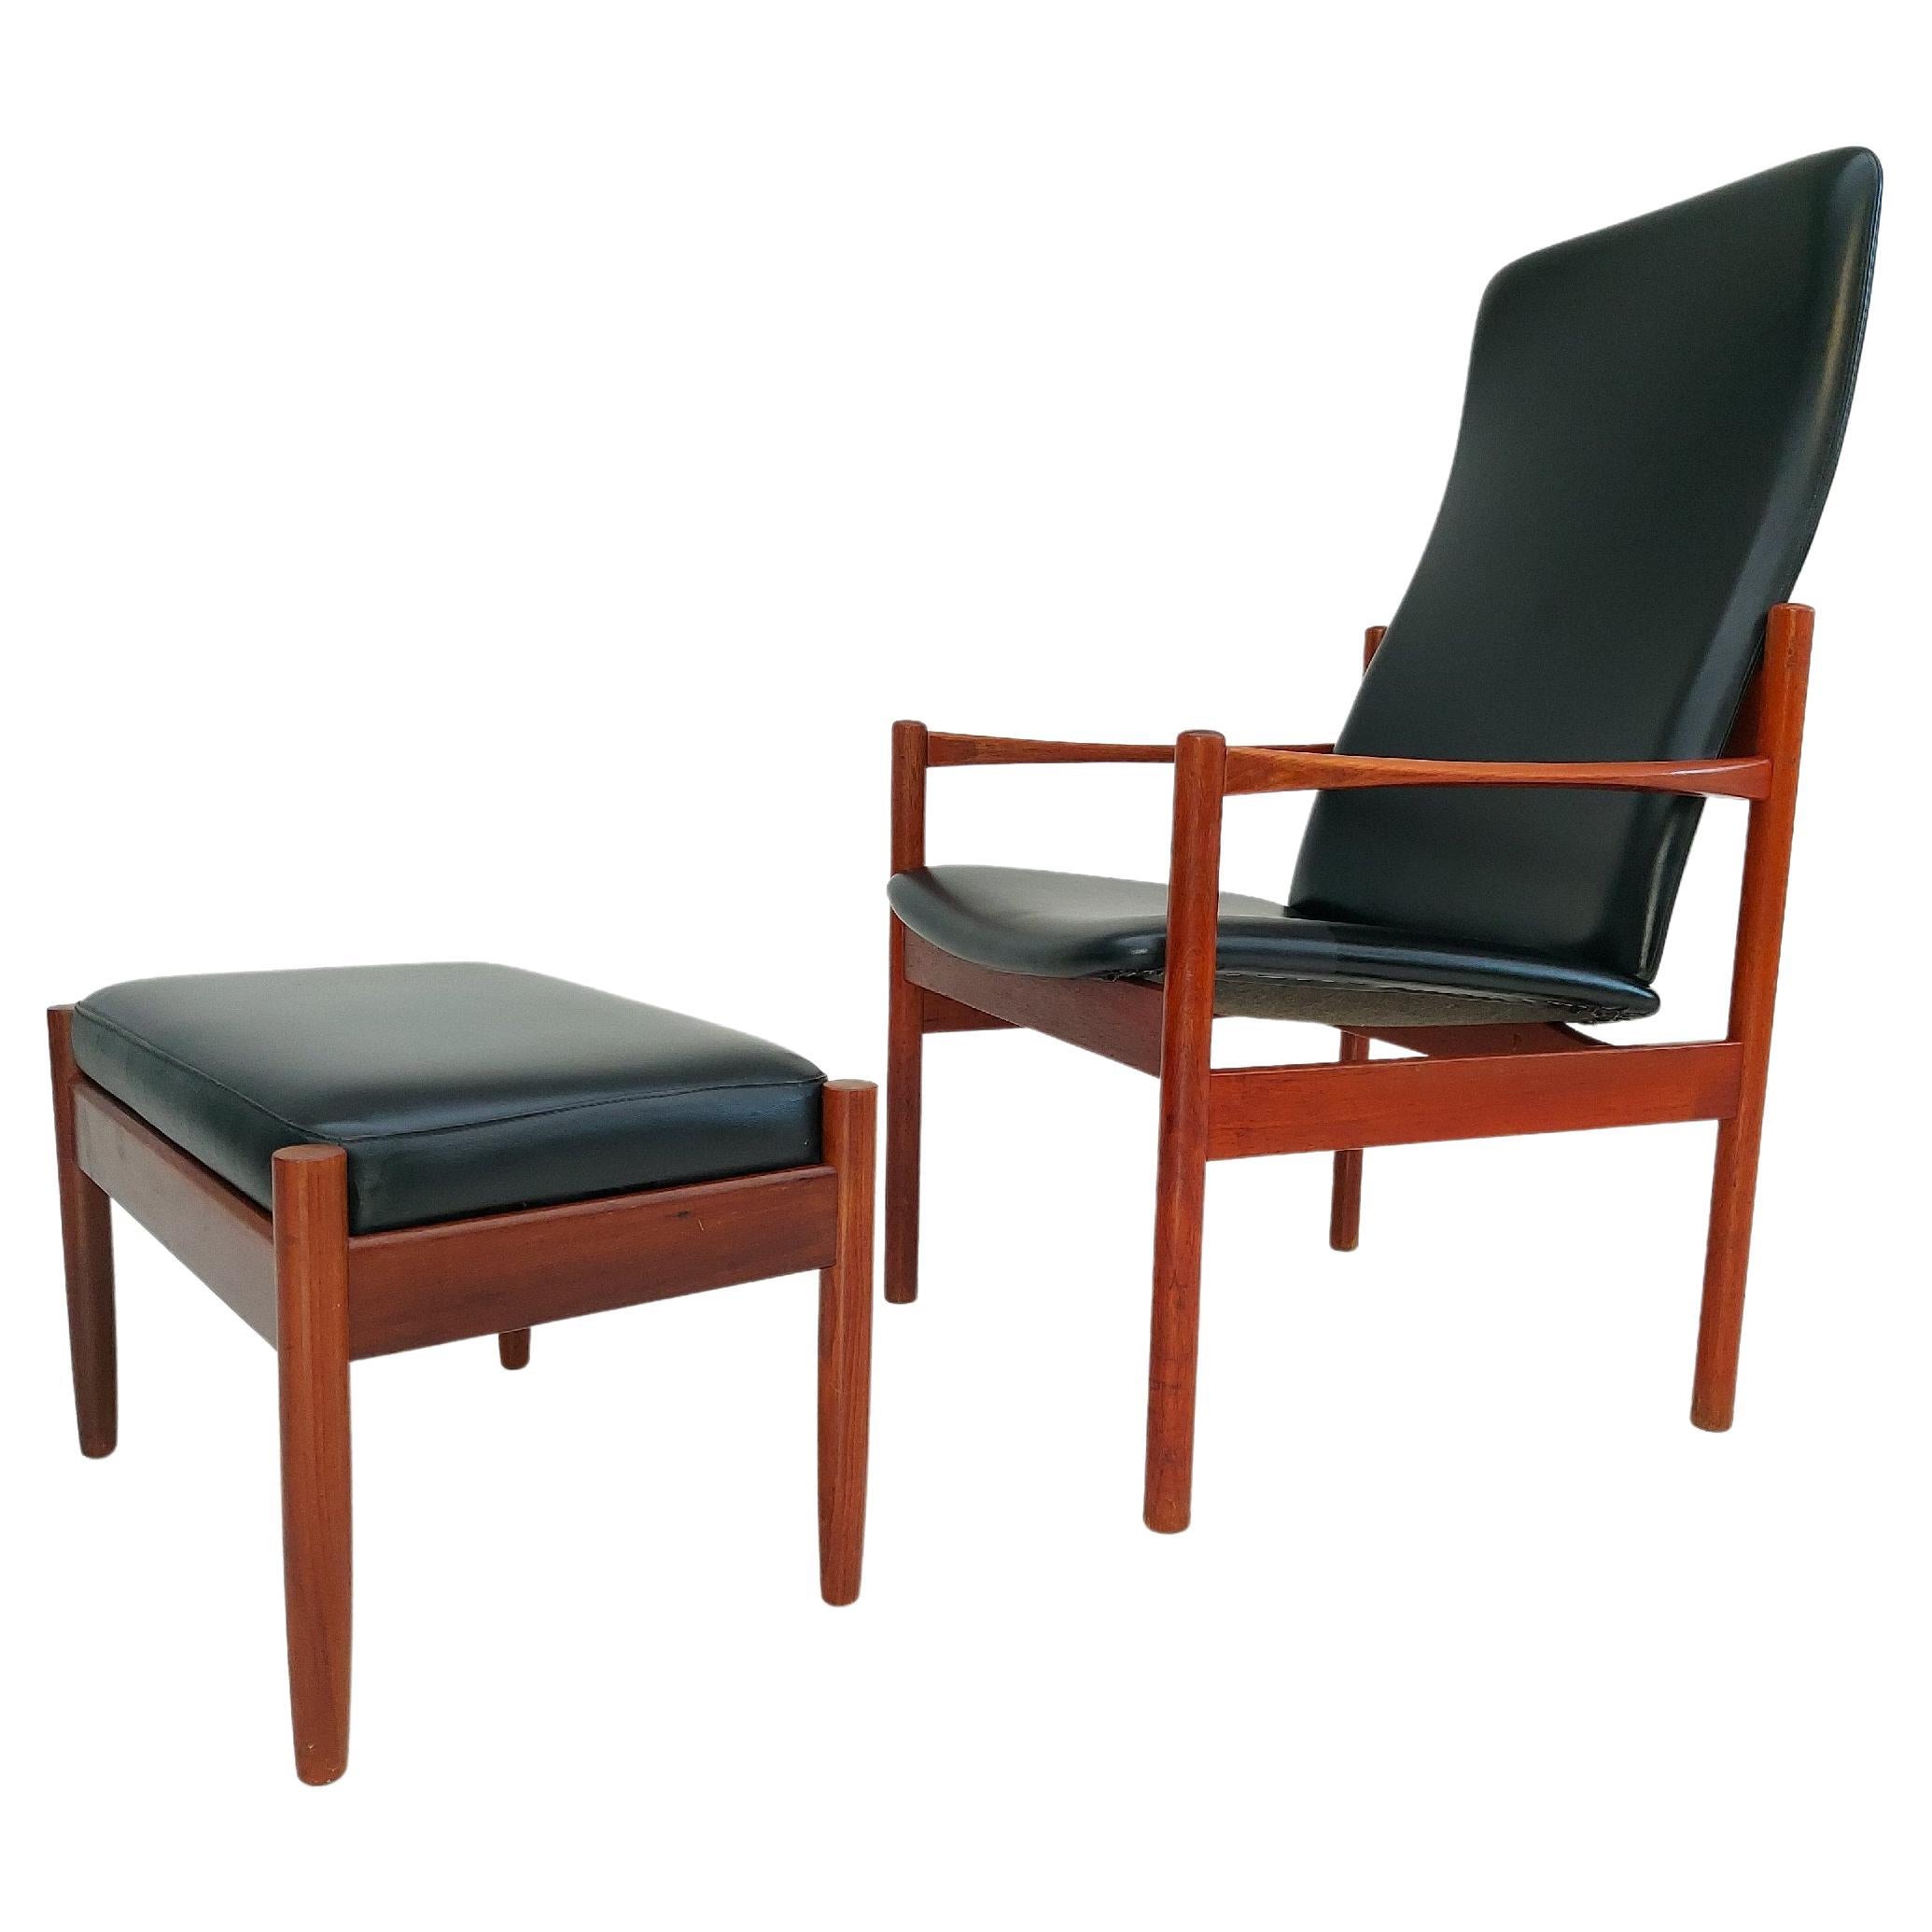 Dänischer Sessel mit Hocker aus Teakholz, Original, sehr guter Zustand, 60er Jahre